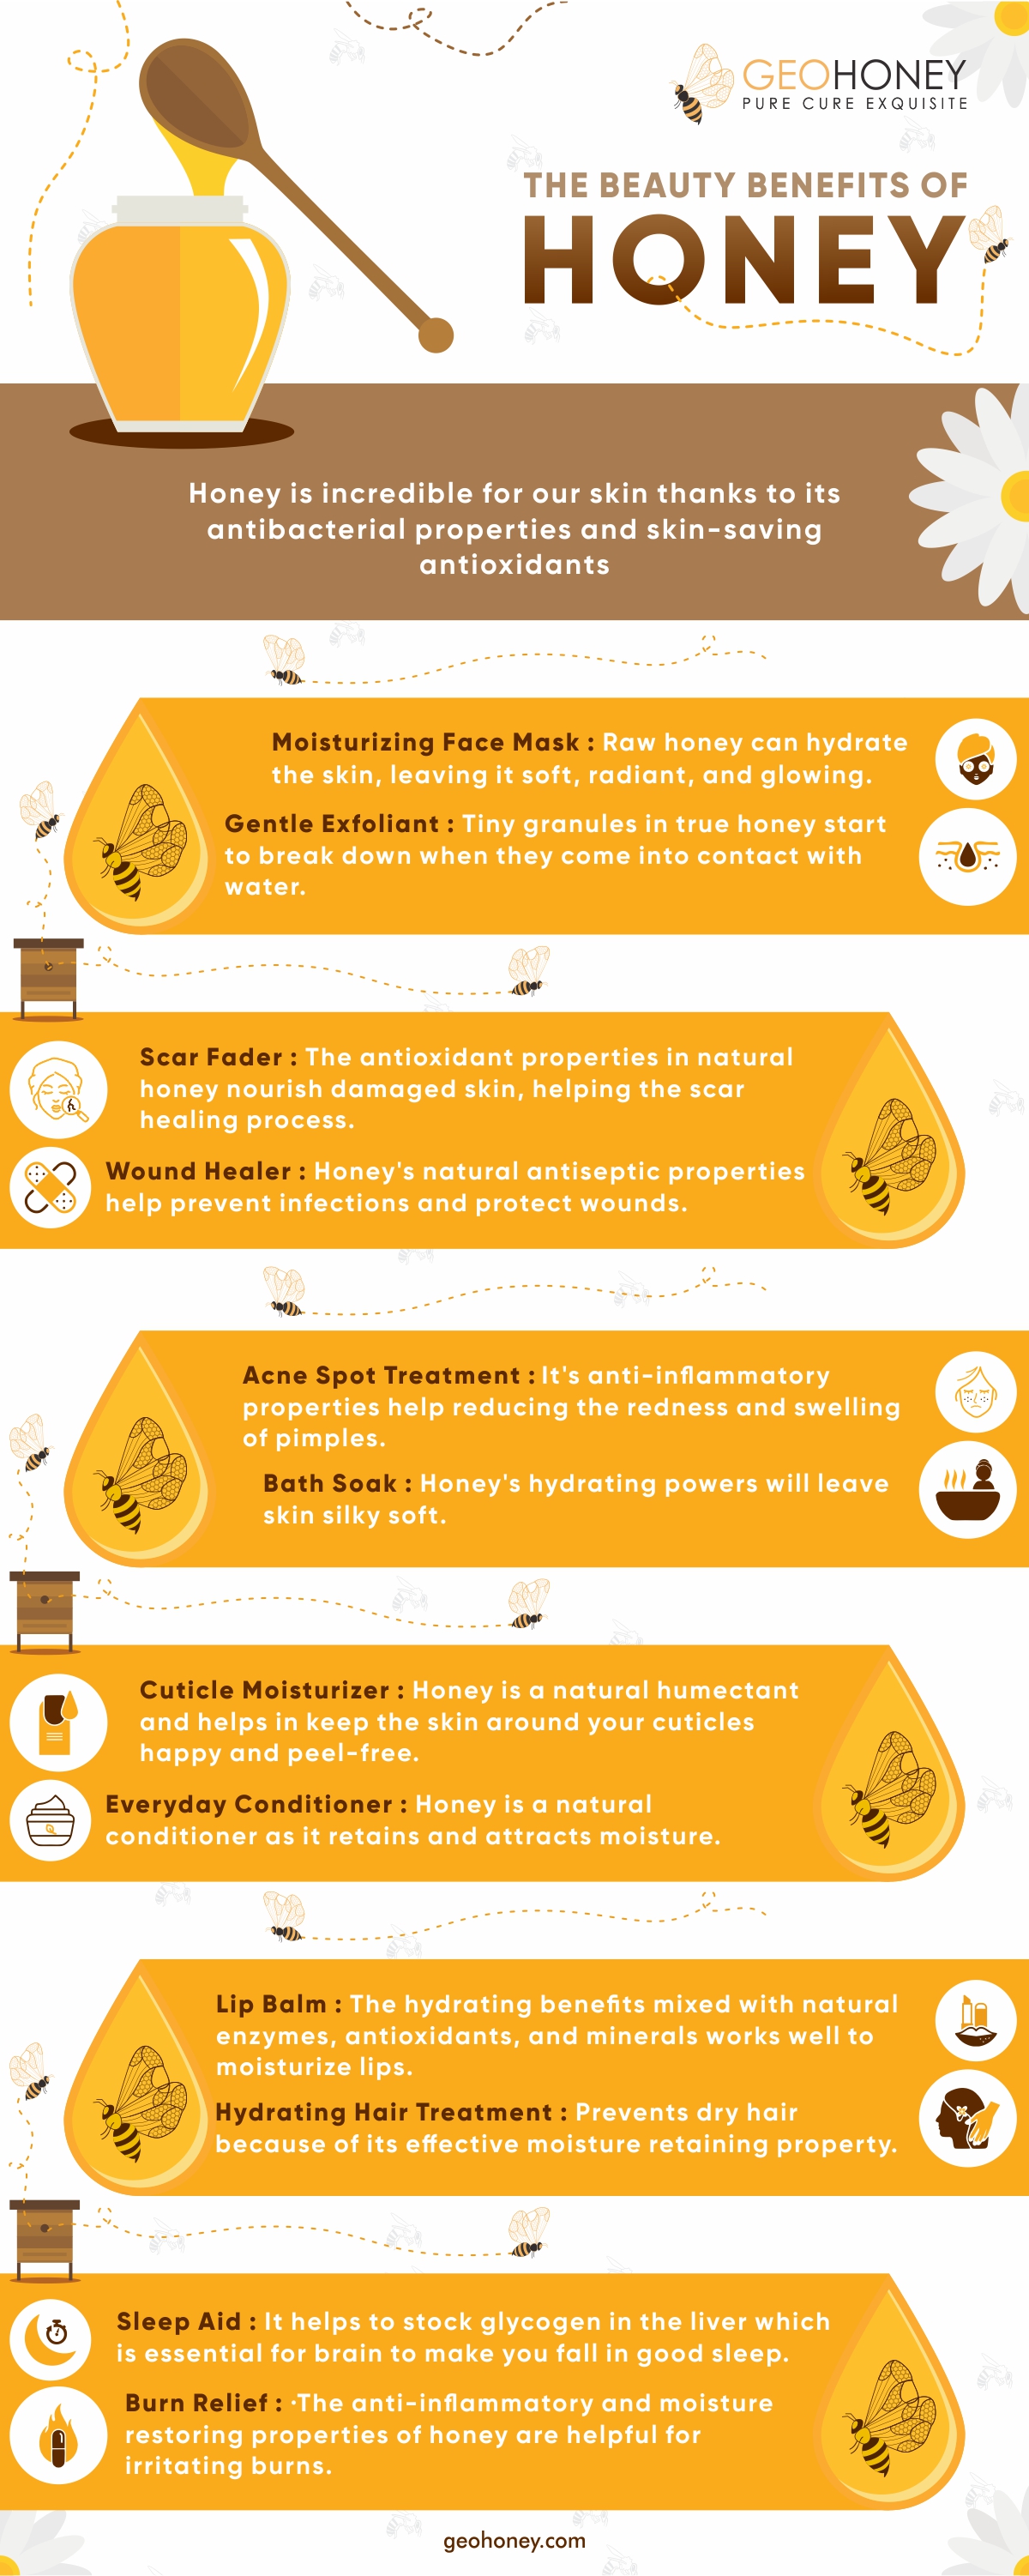 فوائد الجمال للعسل - الجيوهوني